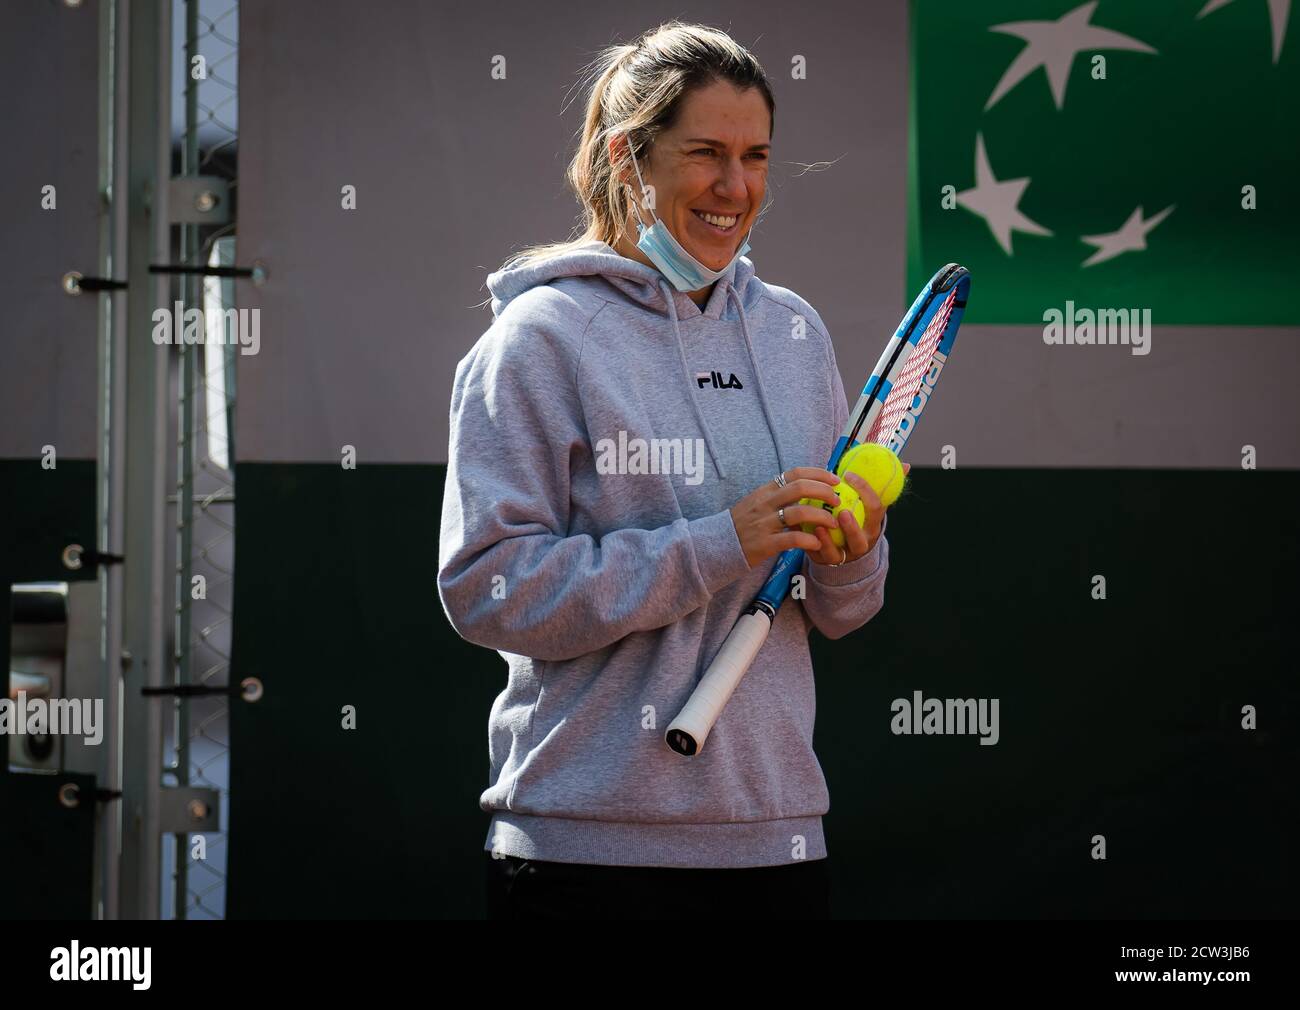 Olga Savchuk durante la práctica antes del inicio de la Roland Garros 2020, Grand Slam torneo de tenis, clasificación, el 26 de septiembre de 2020 en Roland Gar Foto de stock